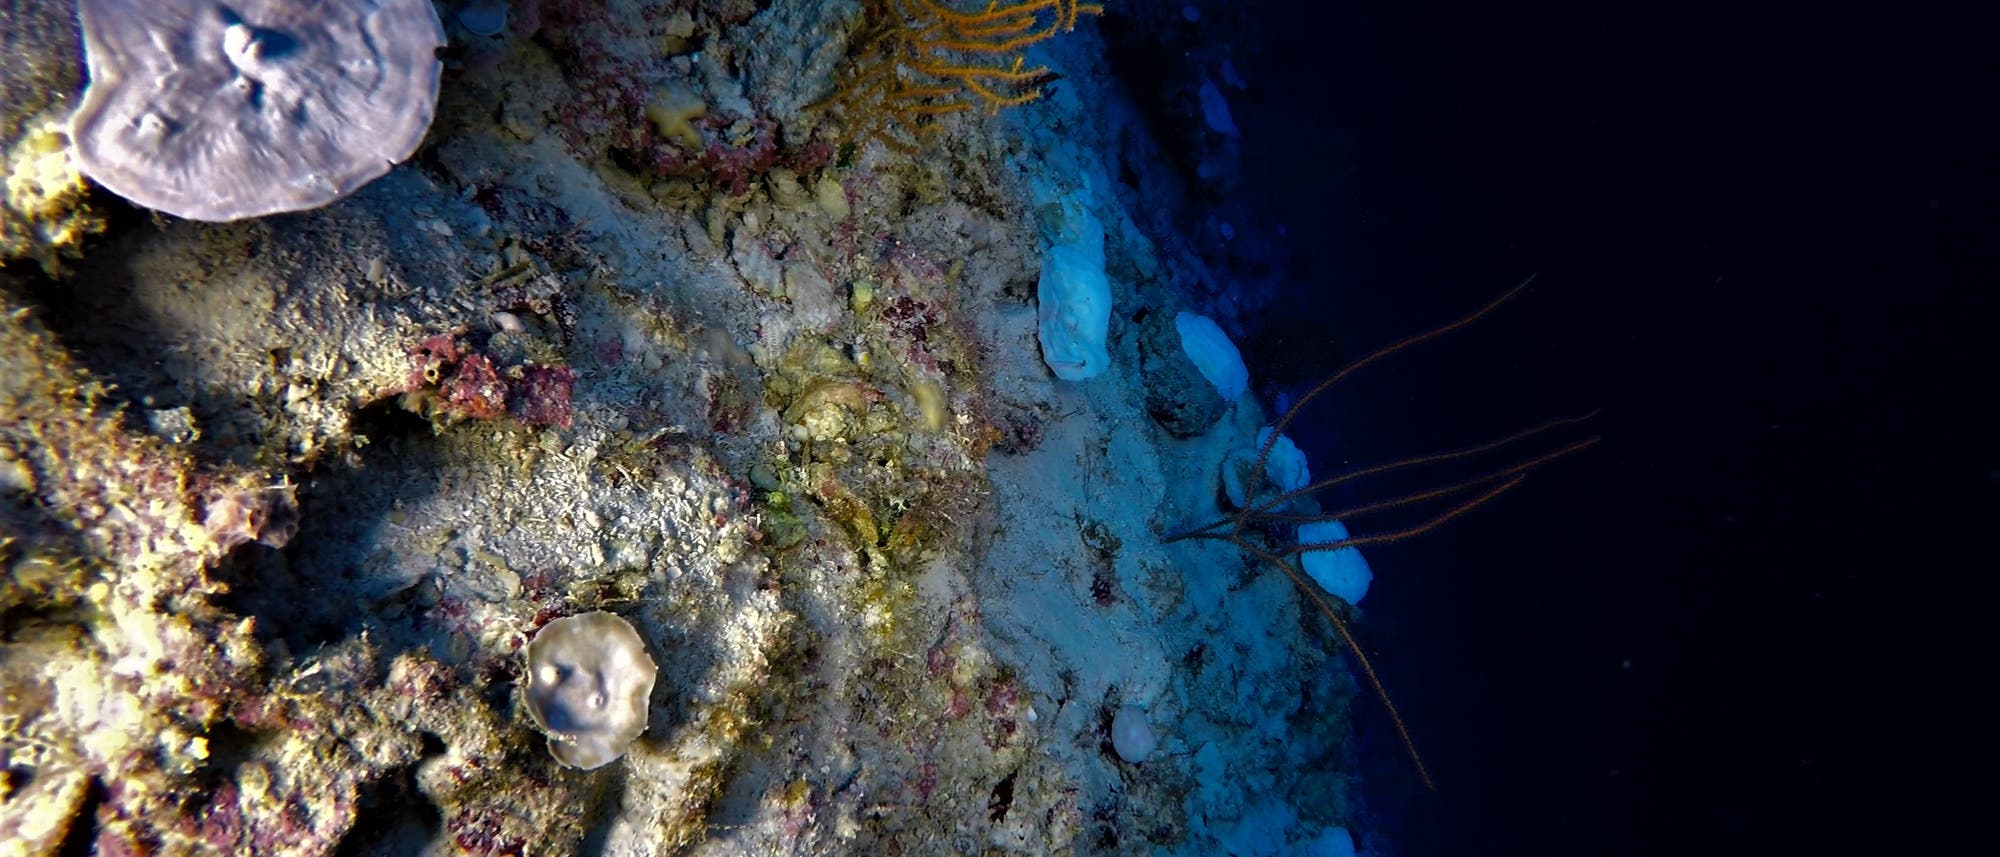 Ein vielfältiges Korallenriff im Indischen Ozean in einer Tiefe von 90 Metern. Links ist das Riff beleuchtet, man sieht ausgebleichte Korallen, die rechte Hälfte ist dunkel